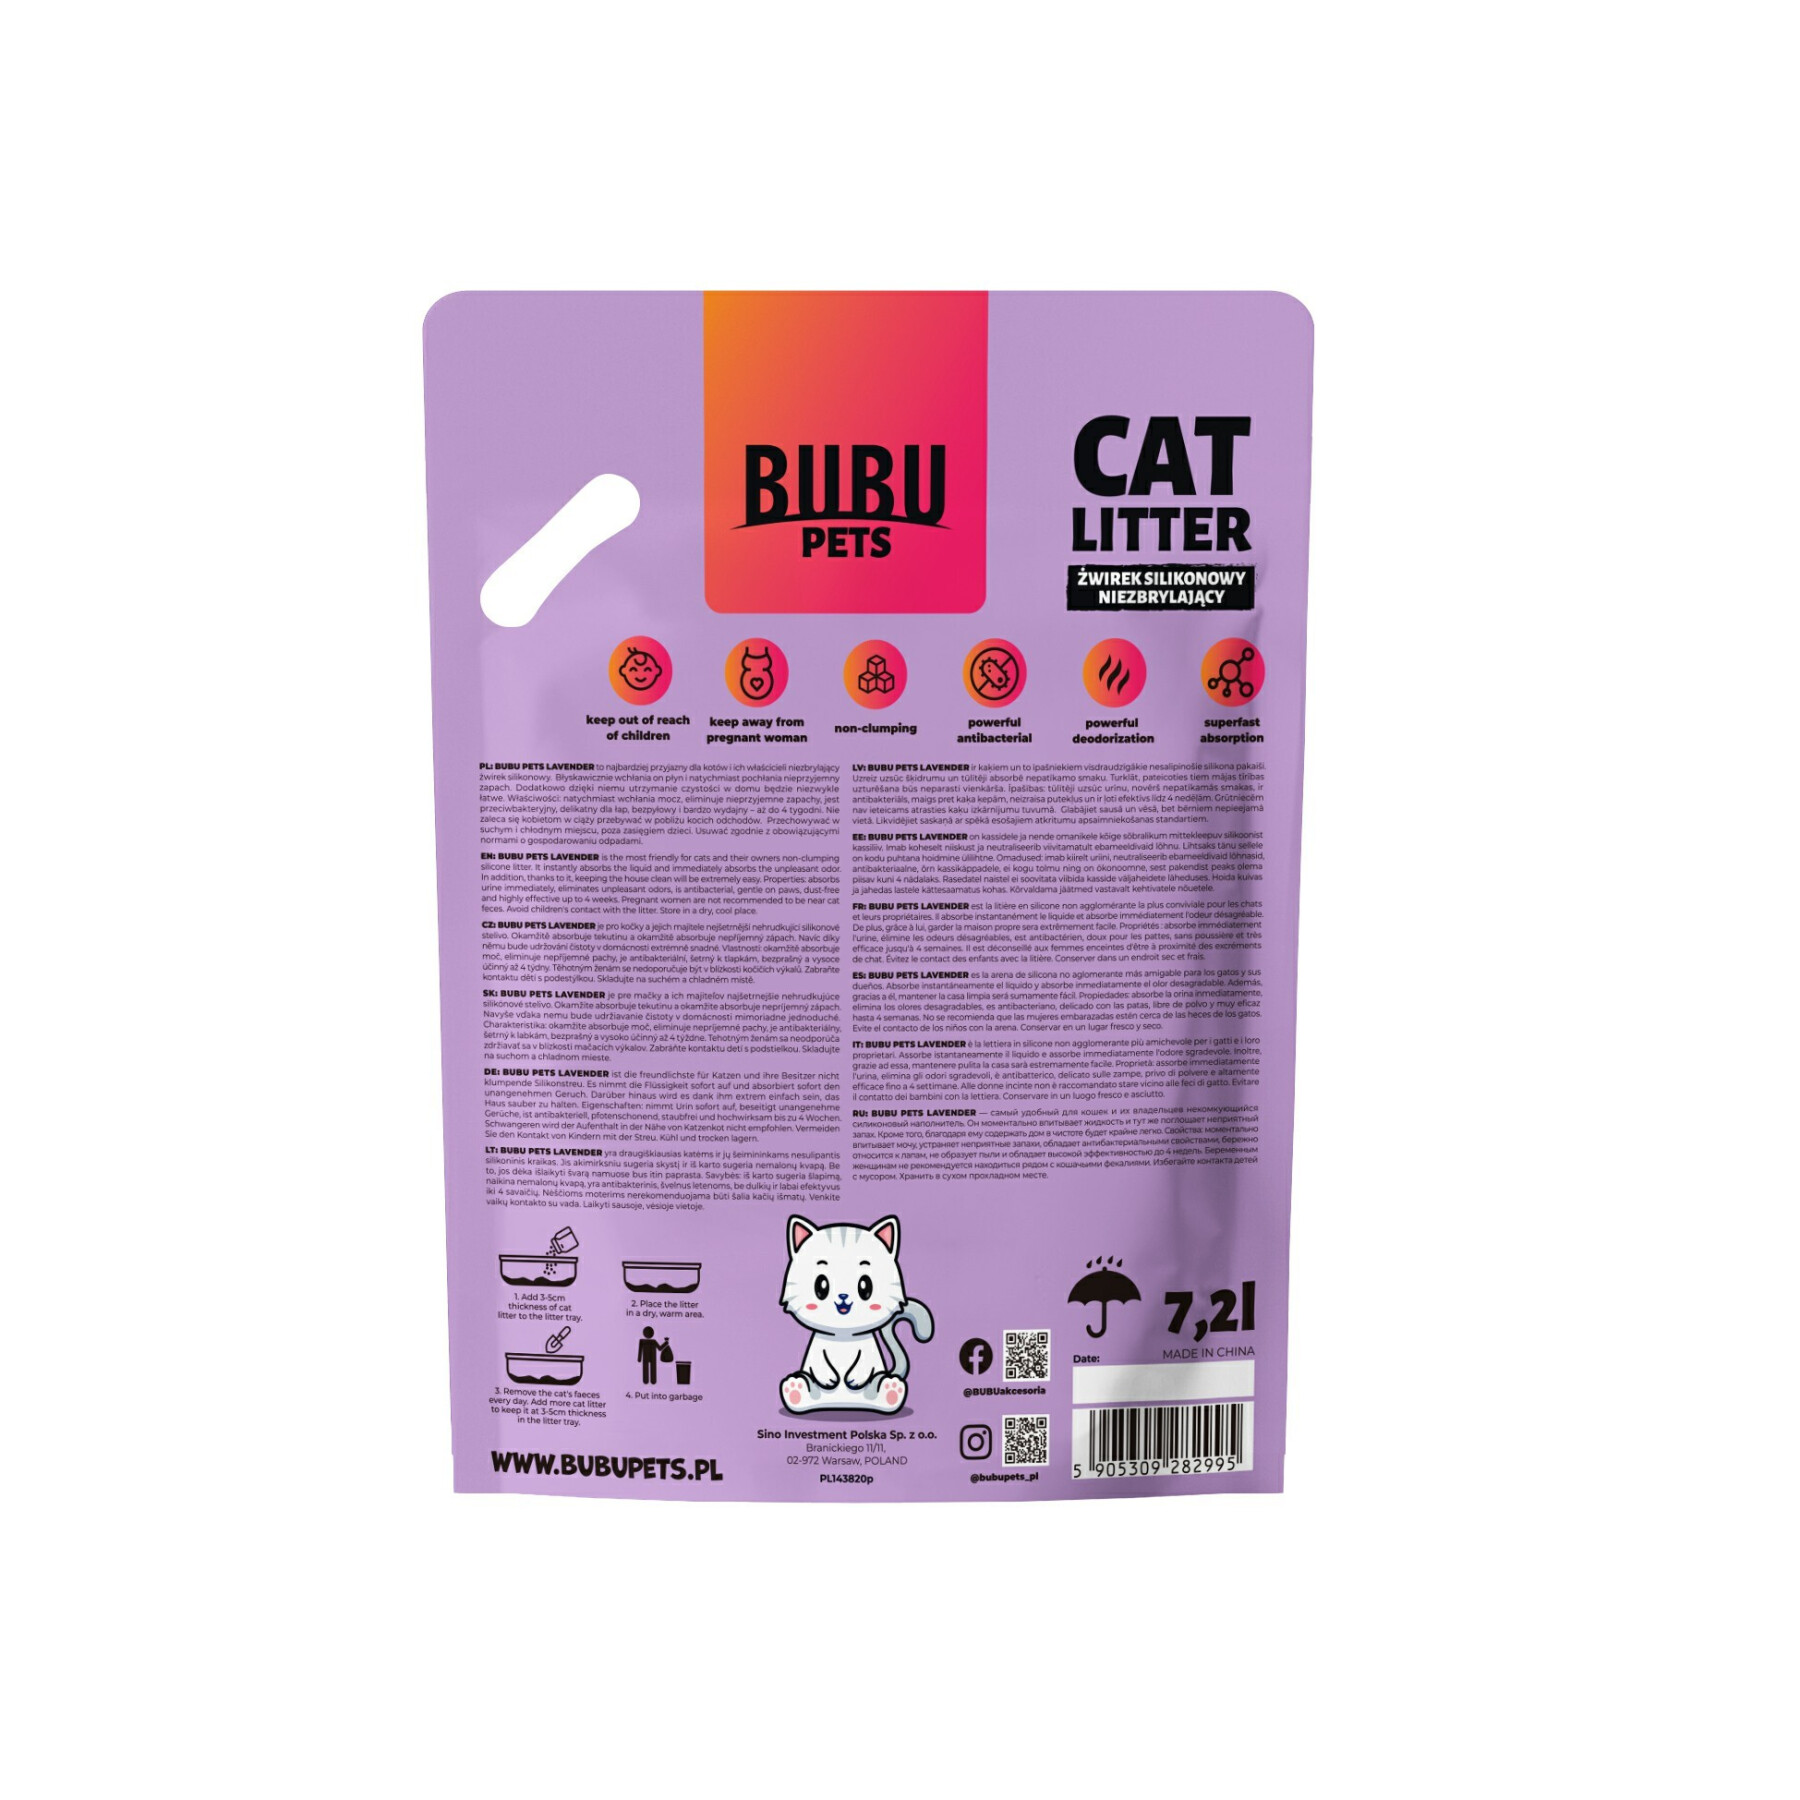 Litière pour chat en gel de silice lavande BUBU Pets